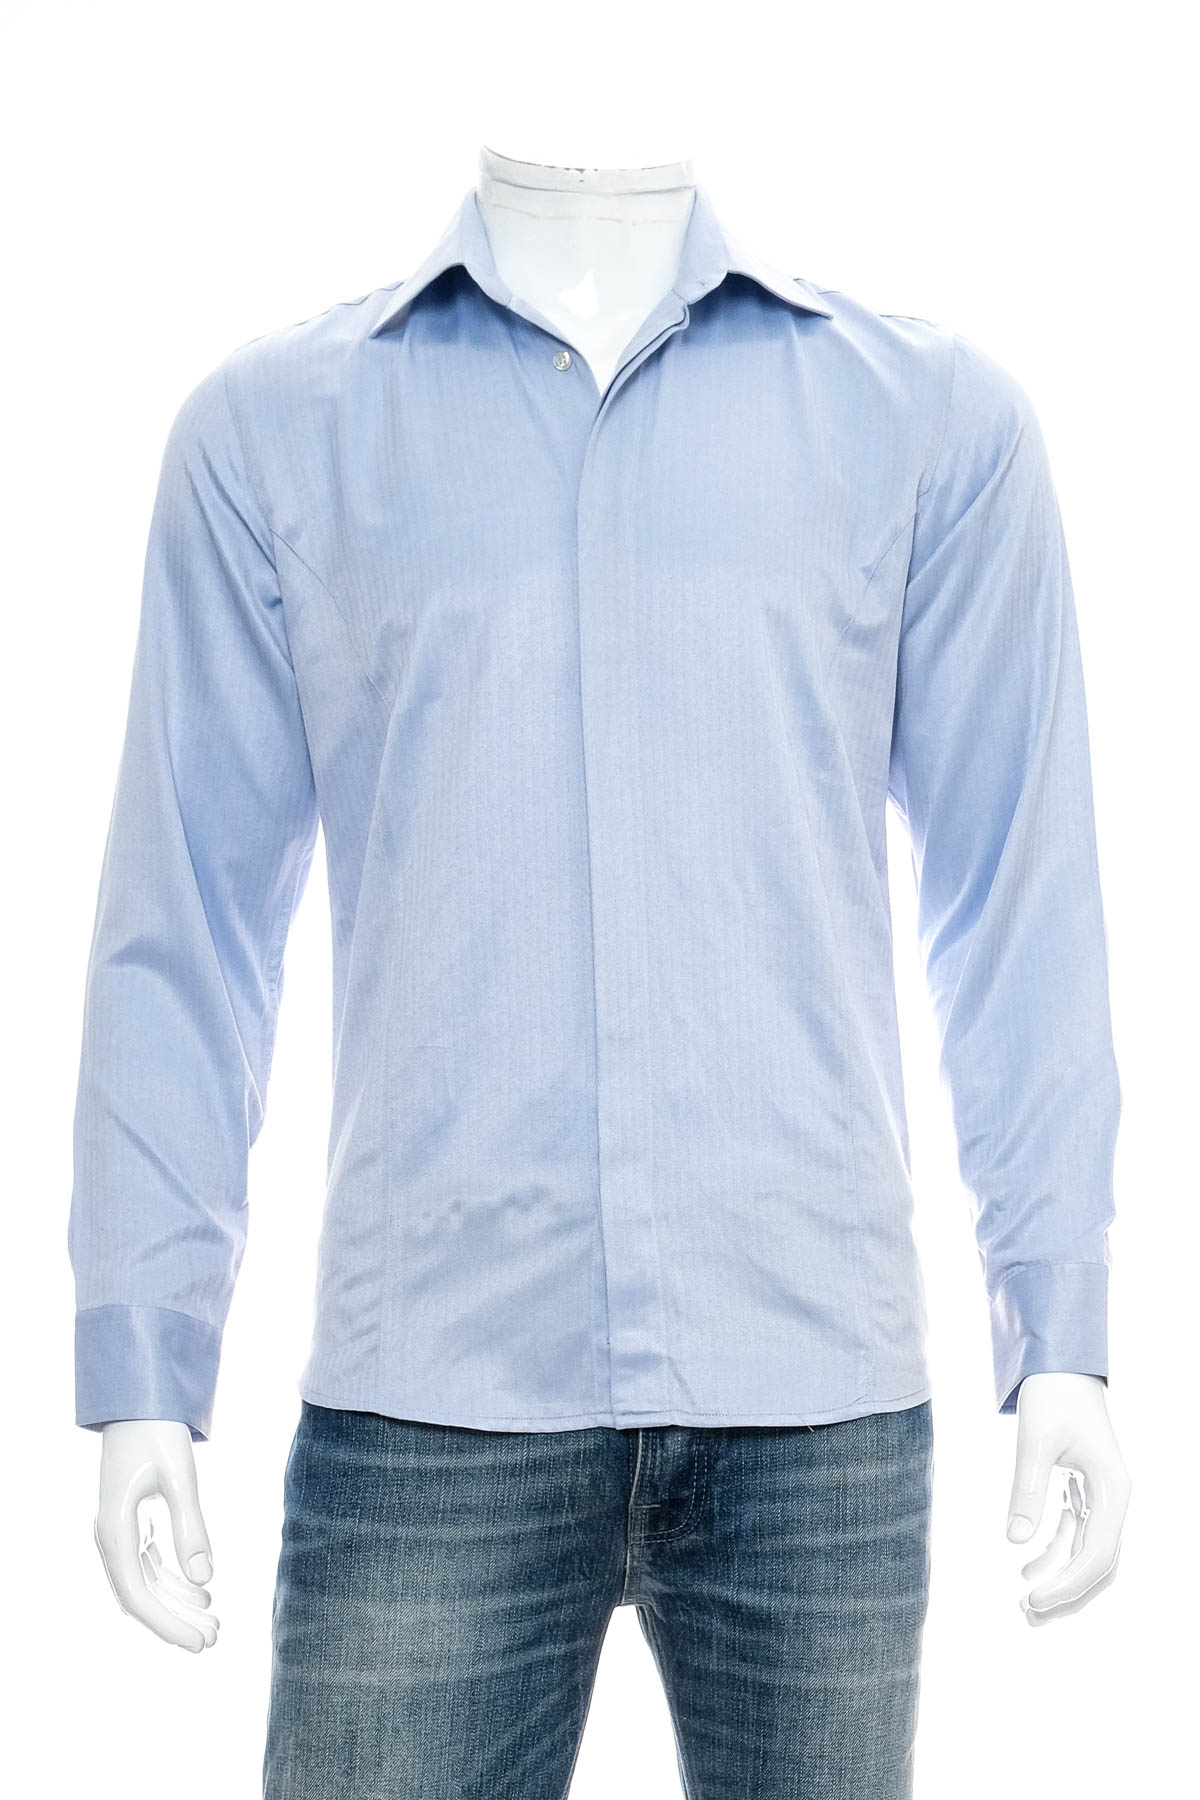 Ανδρικό πουκάμισο - Frant - 0